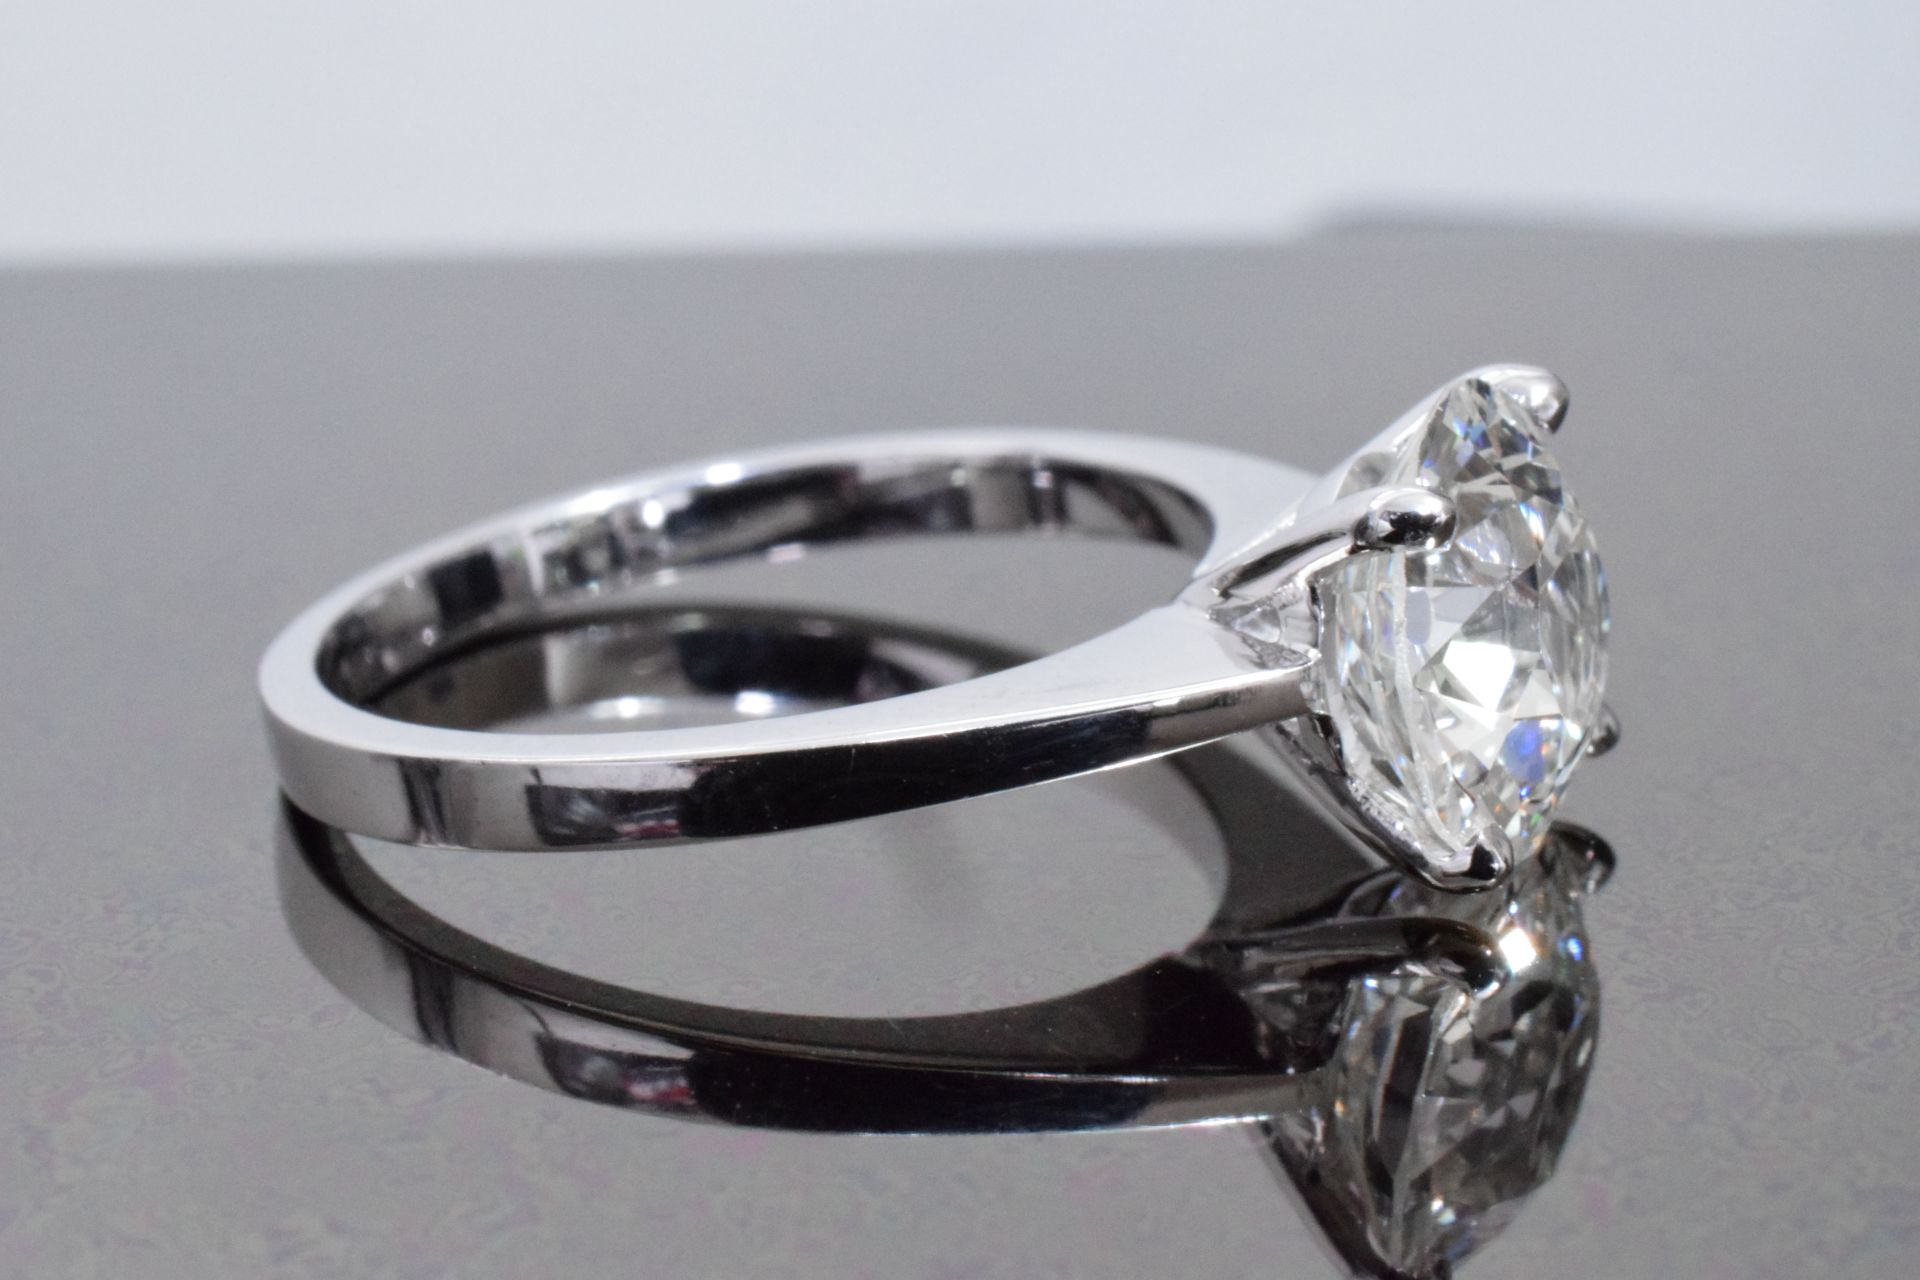 2.50 Carat Diamond Ring Set in White Gold - Image 3 of 6